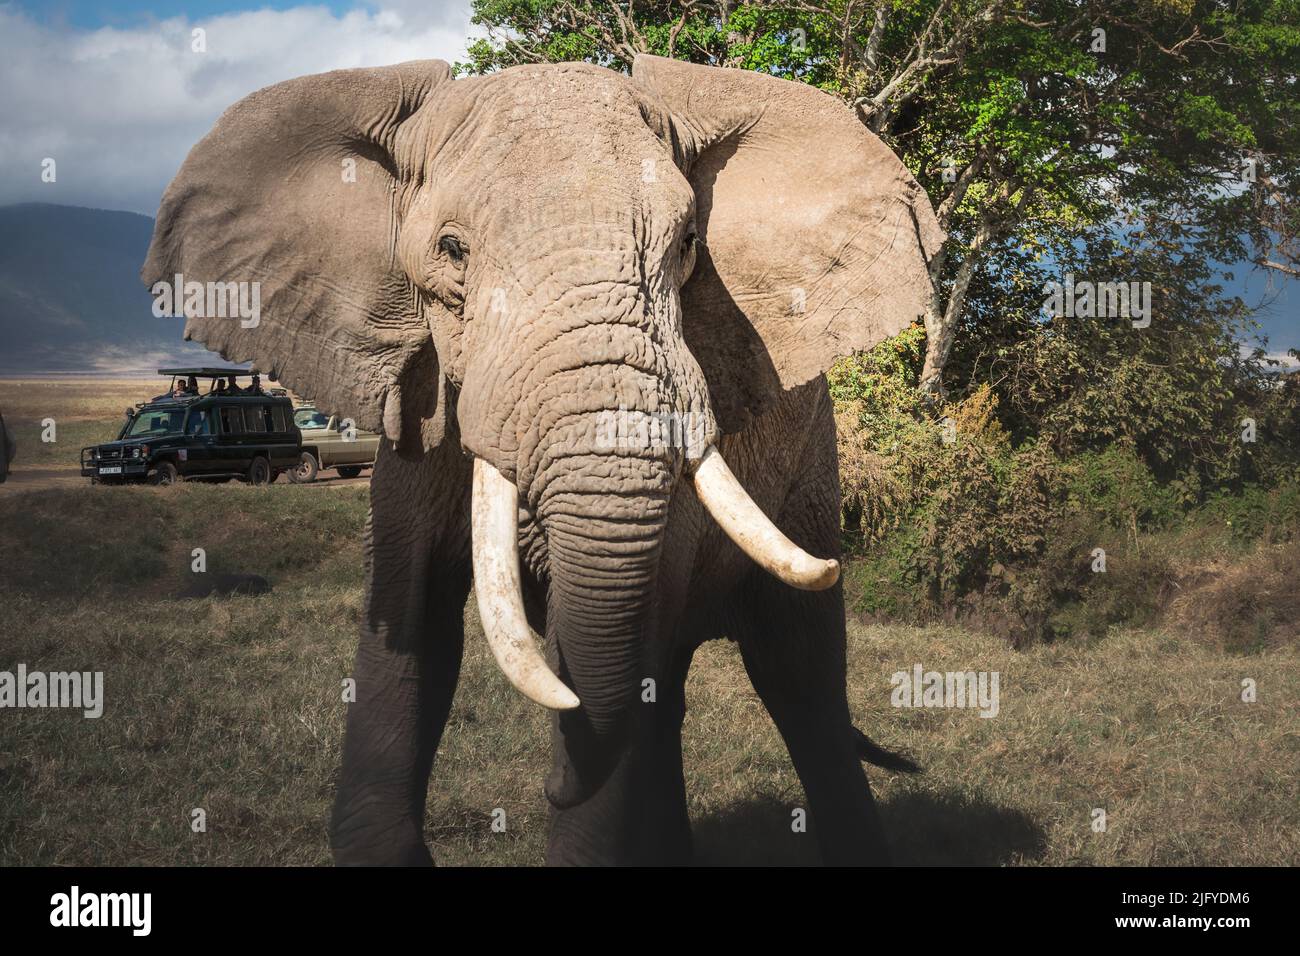 Isolated large adult male elephant (Elephantidae) and wildlife safari jeeps at grassland conservation area of Ngorongoro crater. Tanzania. Africa Stock Photo